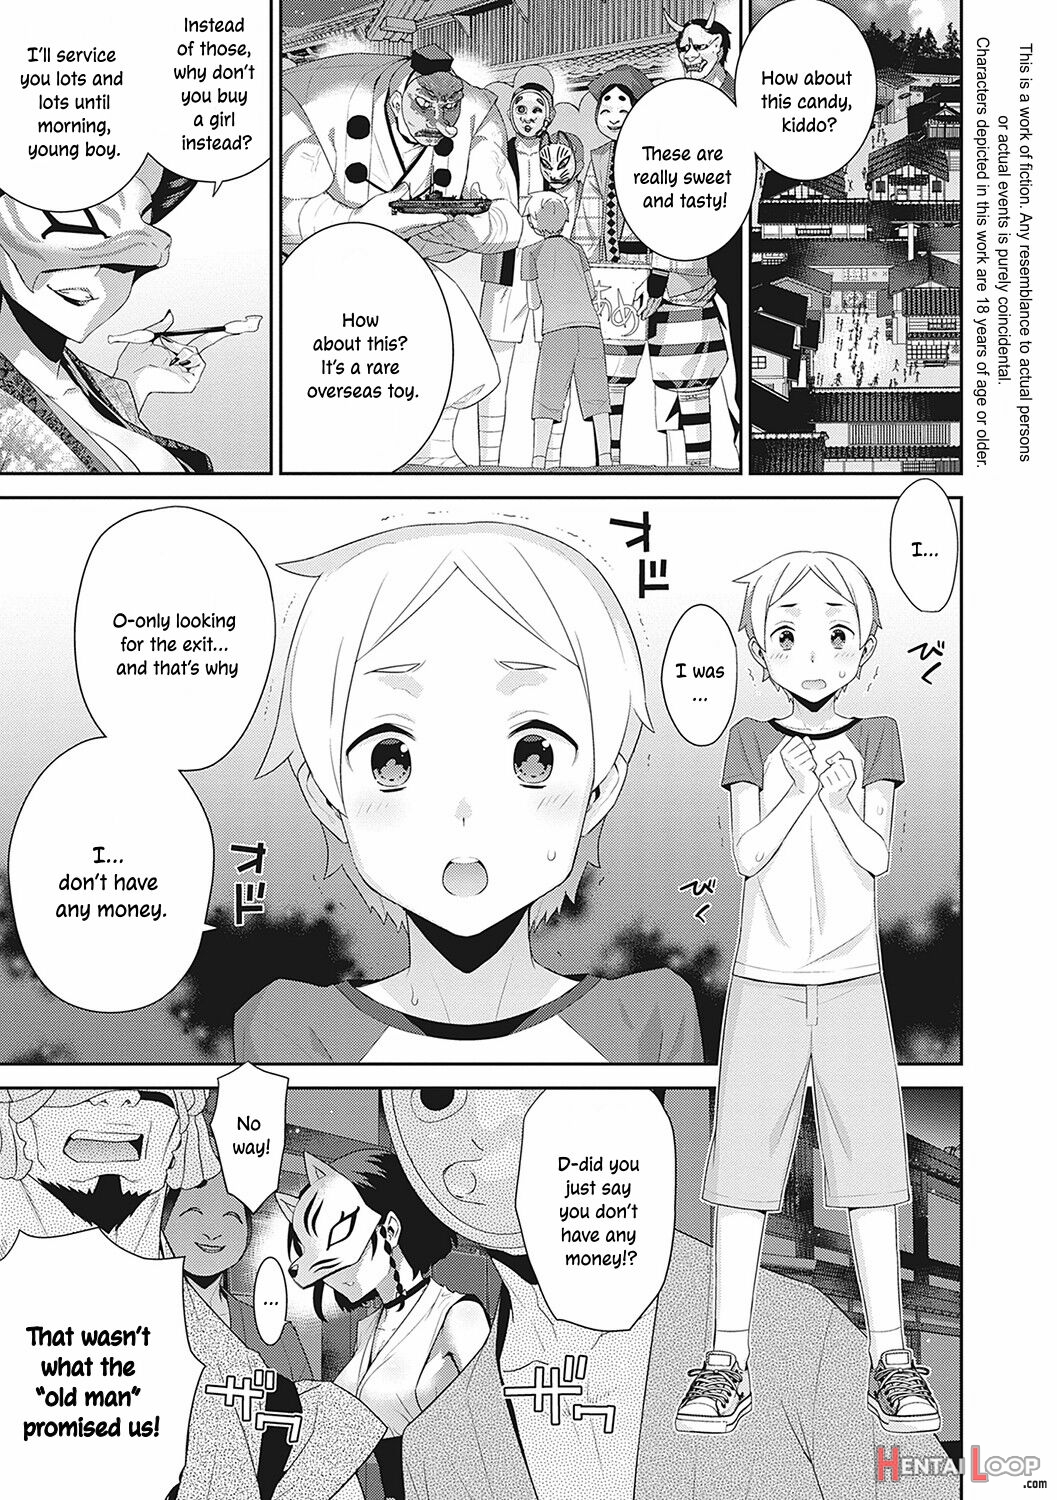 Ichiya No Machi page 1